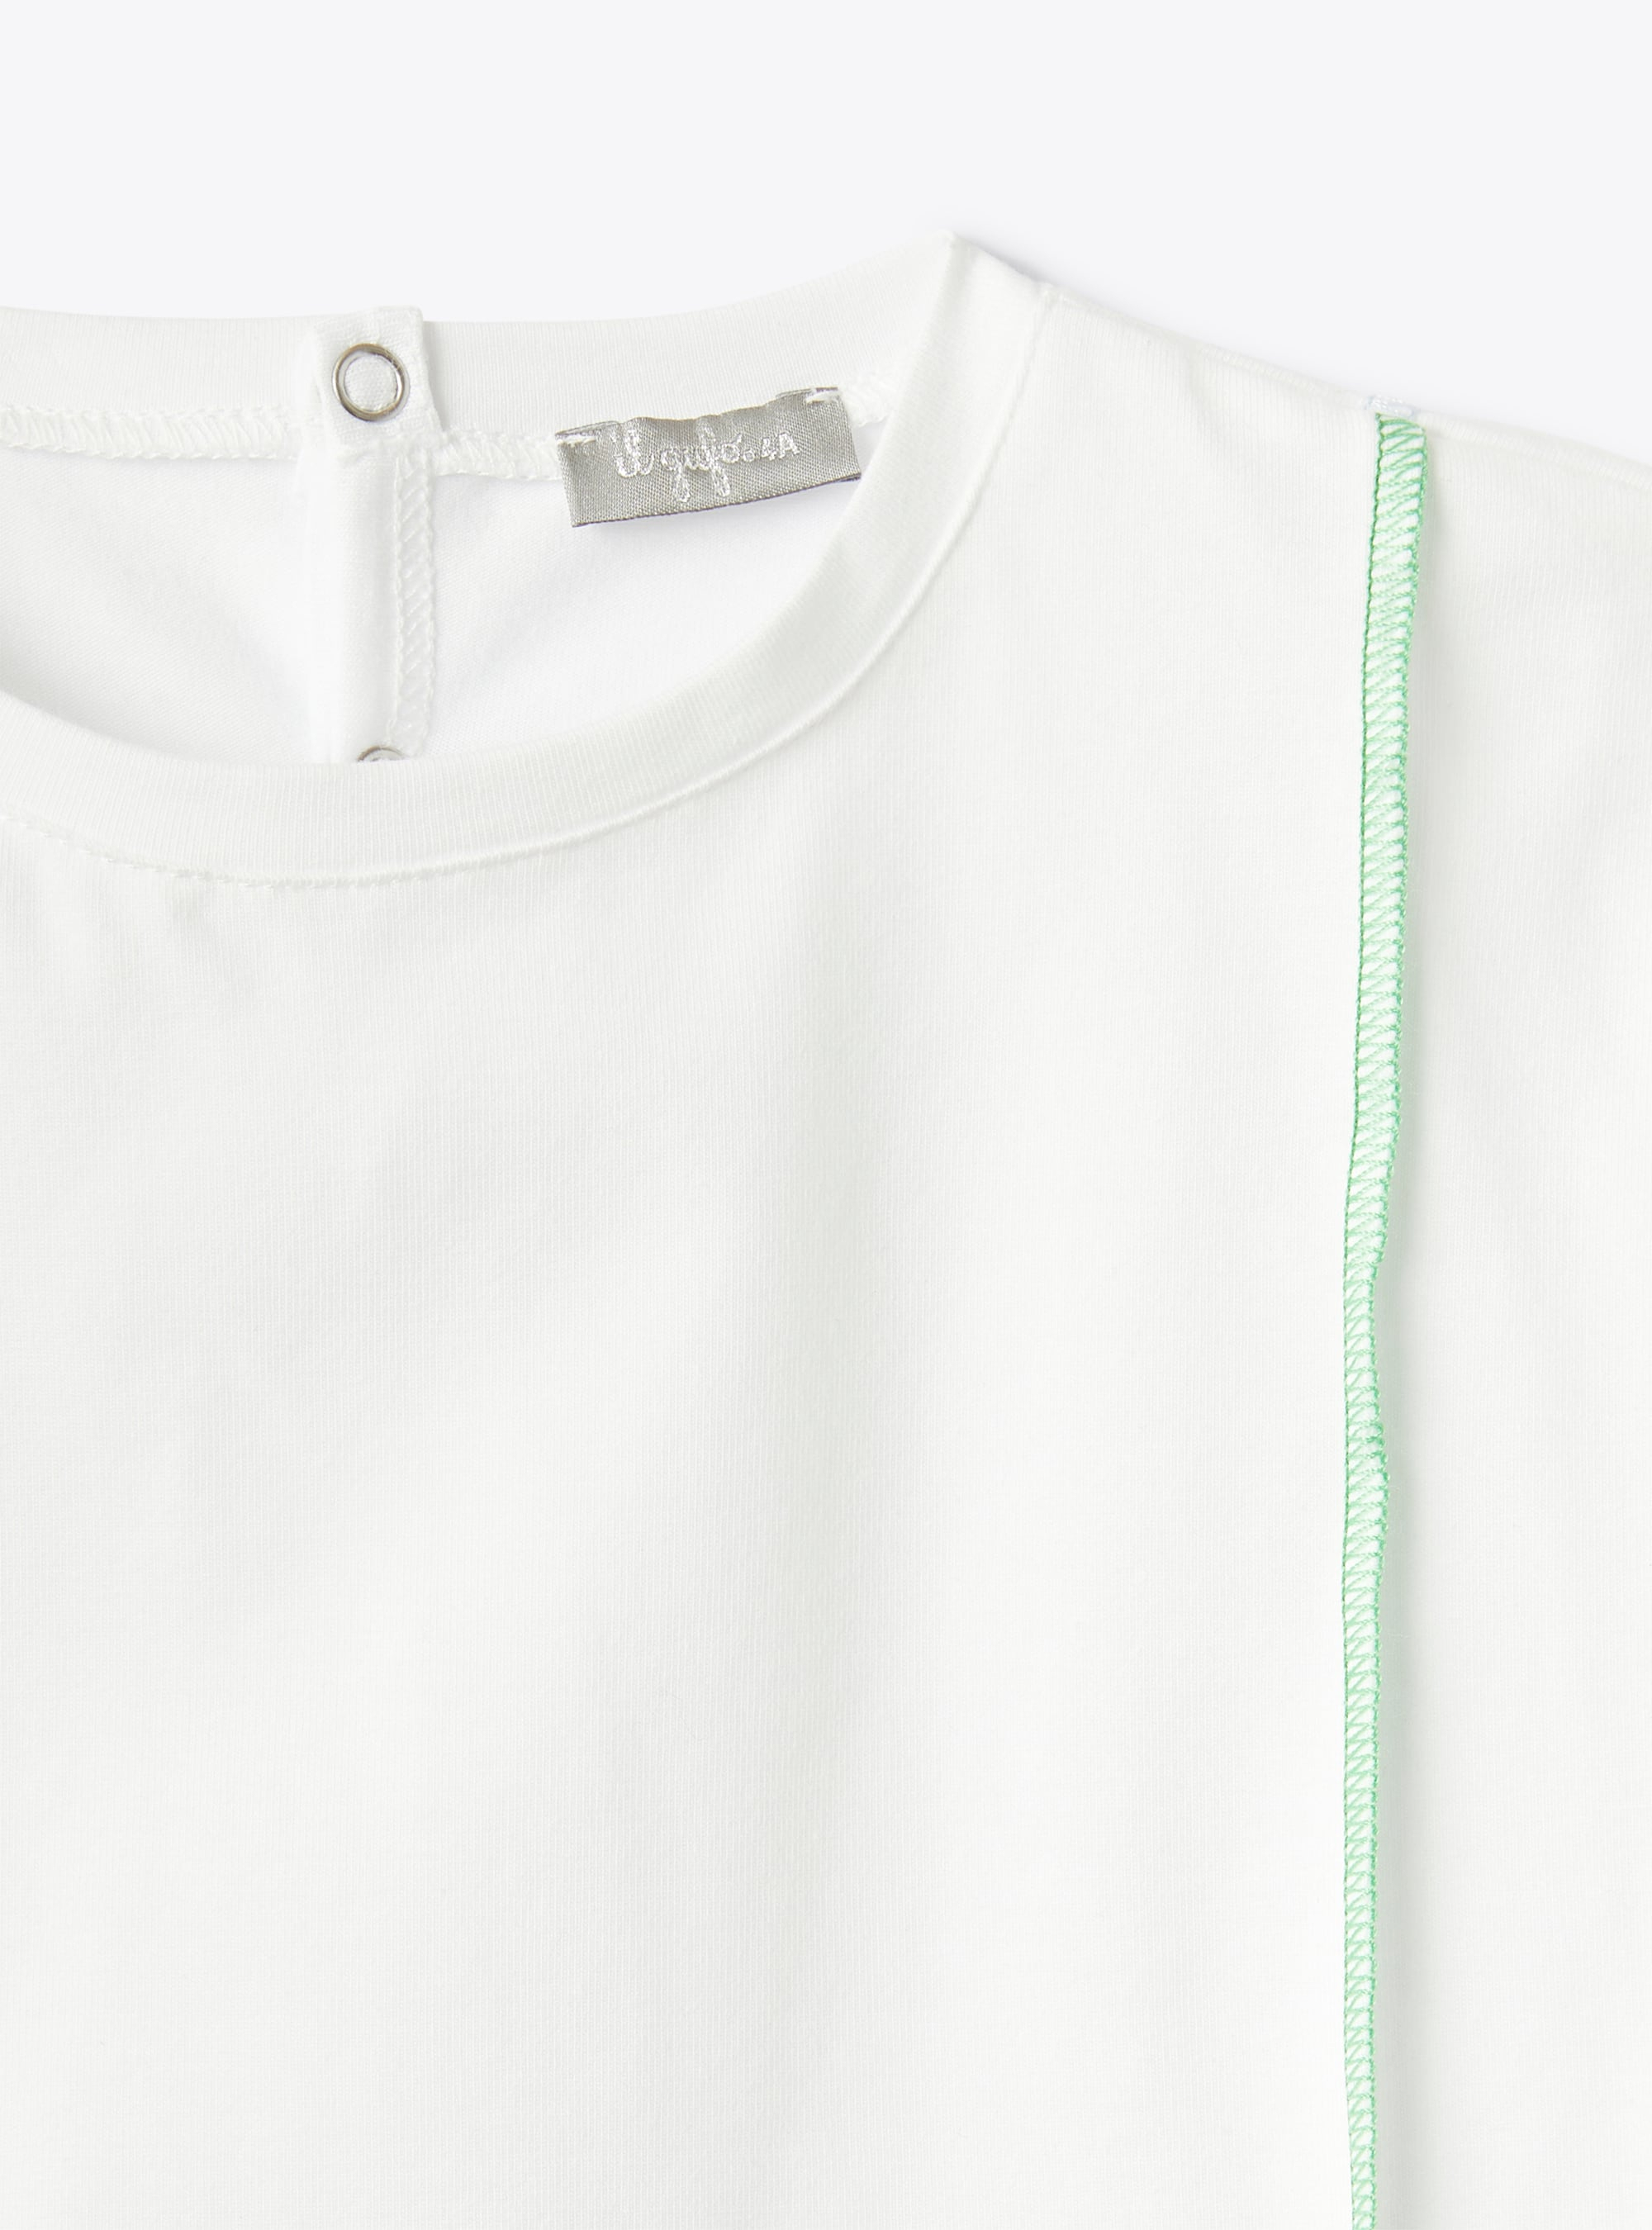 Белая футболка с контрастными строчками - Бежевый | Il Gufo